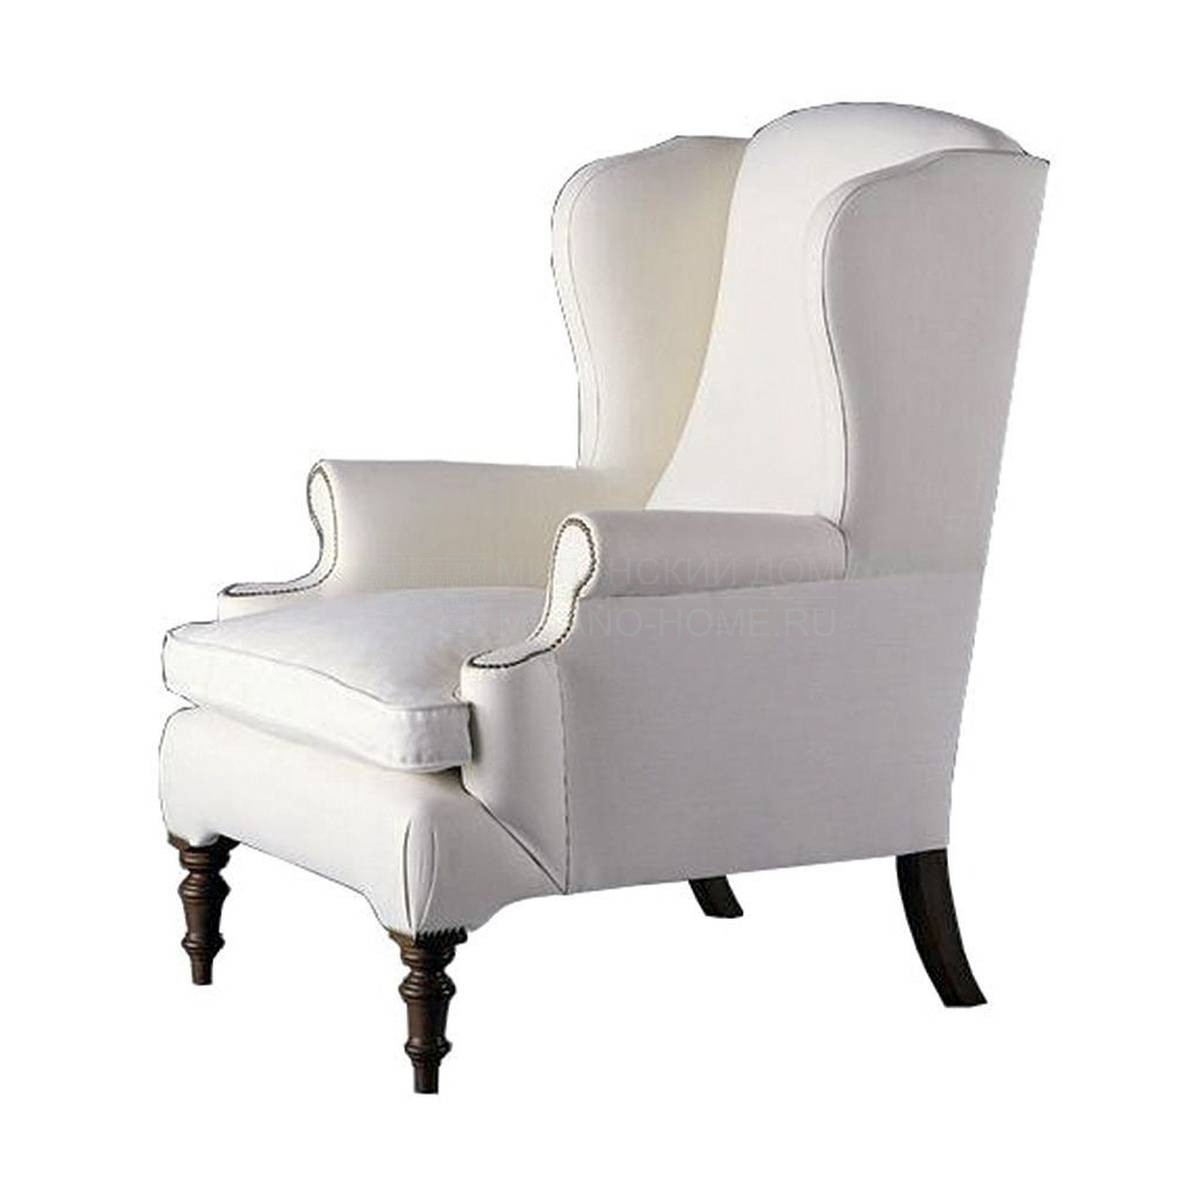 Кресло Z-8127 armchair из Испании фабрики GUADARTE